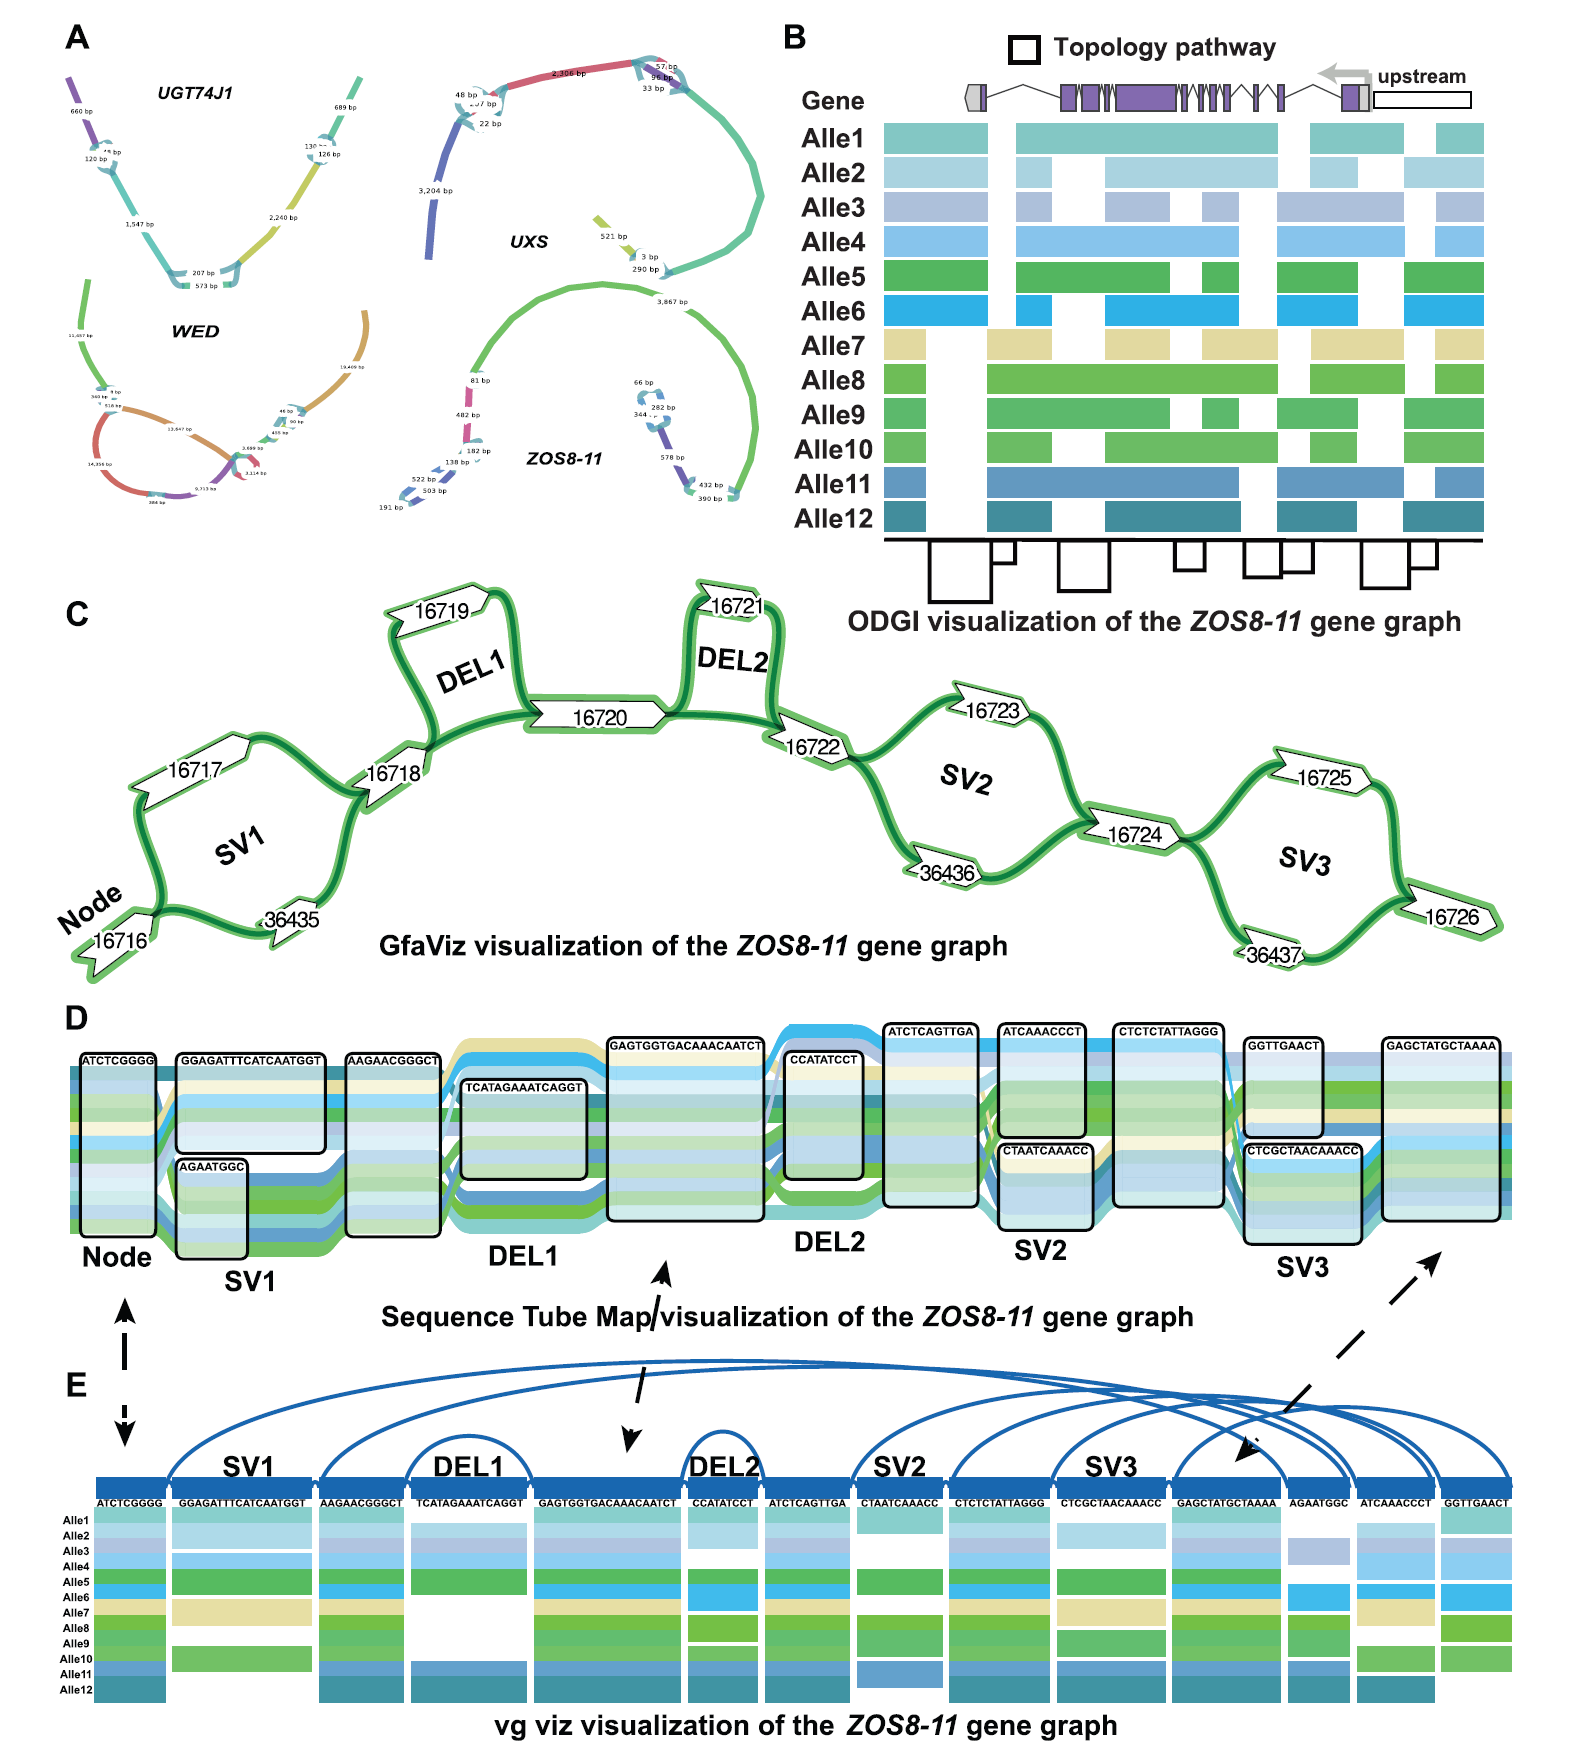 基于47份水稻构建的图泛可视化。(A）水稻中不同基因及其变体的 Bandage可视化。这些基因是 UGT74J1、UXS、WED 和 ZOS8-11。不同的气泡代表结构变异，线条的长度代表碱基的数量。(B) ODGI图泛中 ZOS8-11 基因的可视化。不同颜色代表不同路径，黑线代表路径的拓扑结构。(C)基于图的泛基因组中 ZOS8-11 基因的 GfaViz可视化。线条连接节点，节点上的数字代表节点编号。(D) 序列管图可视化